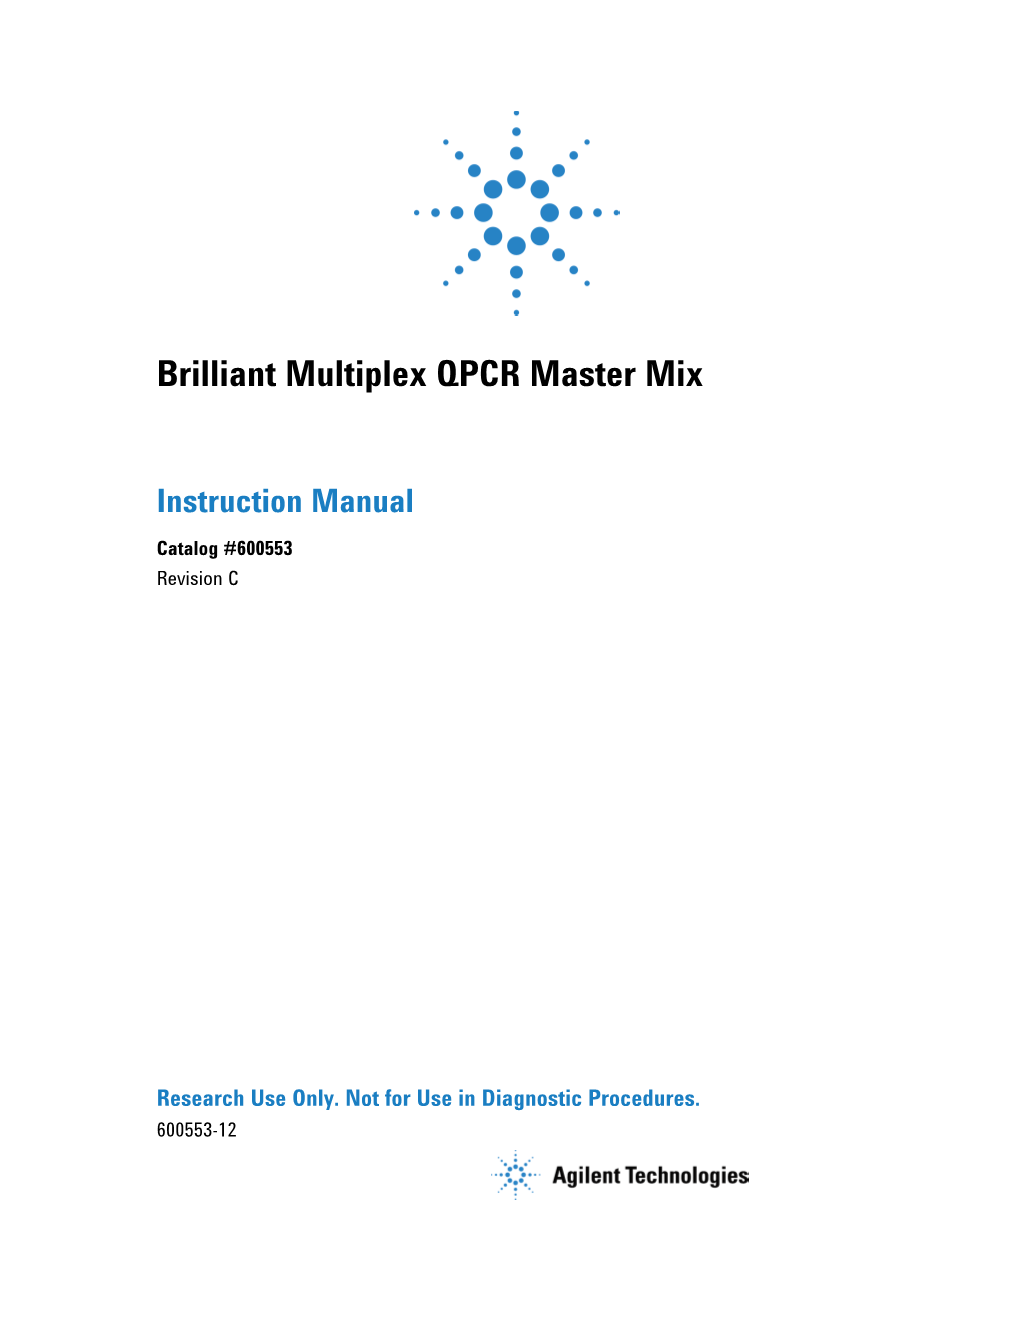 Manual: Brilliant Multiplex QPCR Master